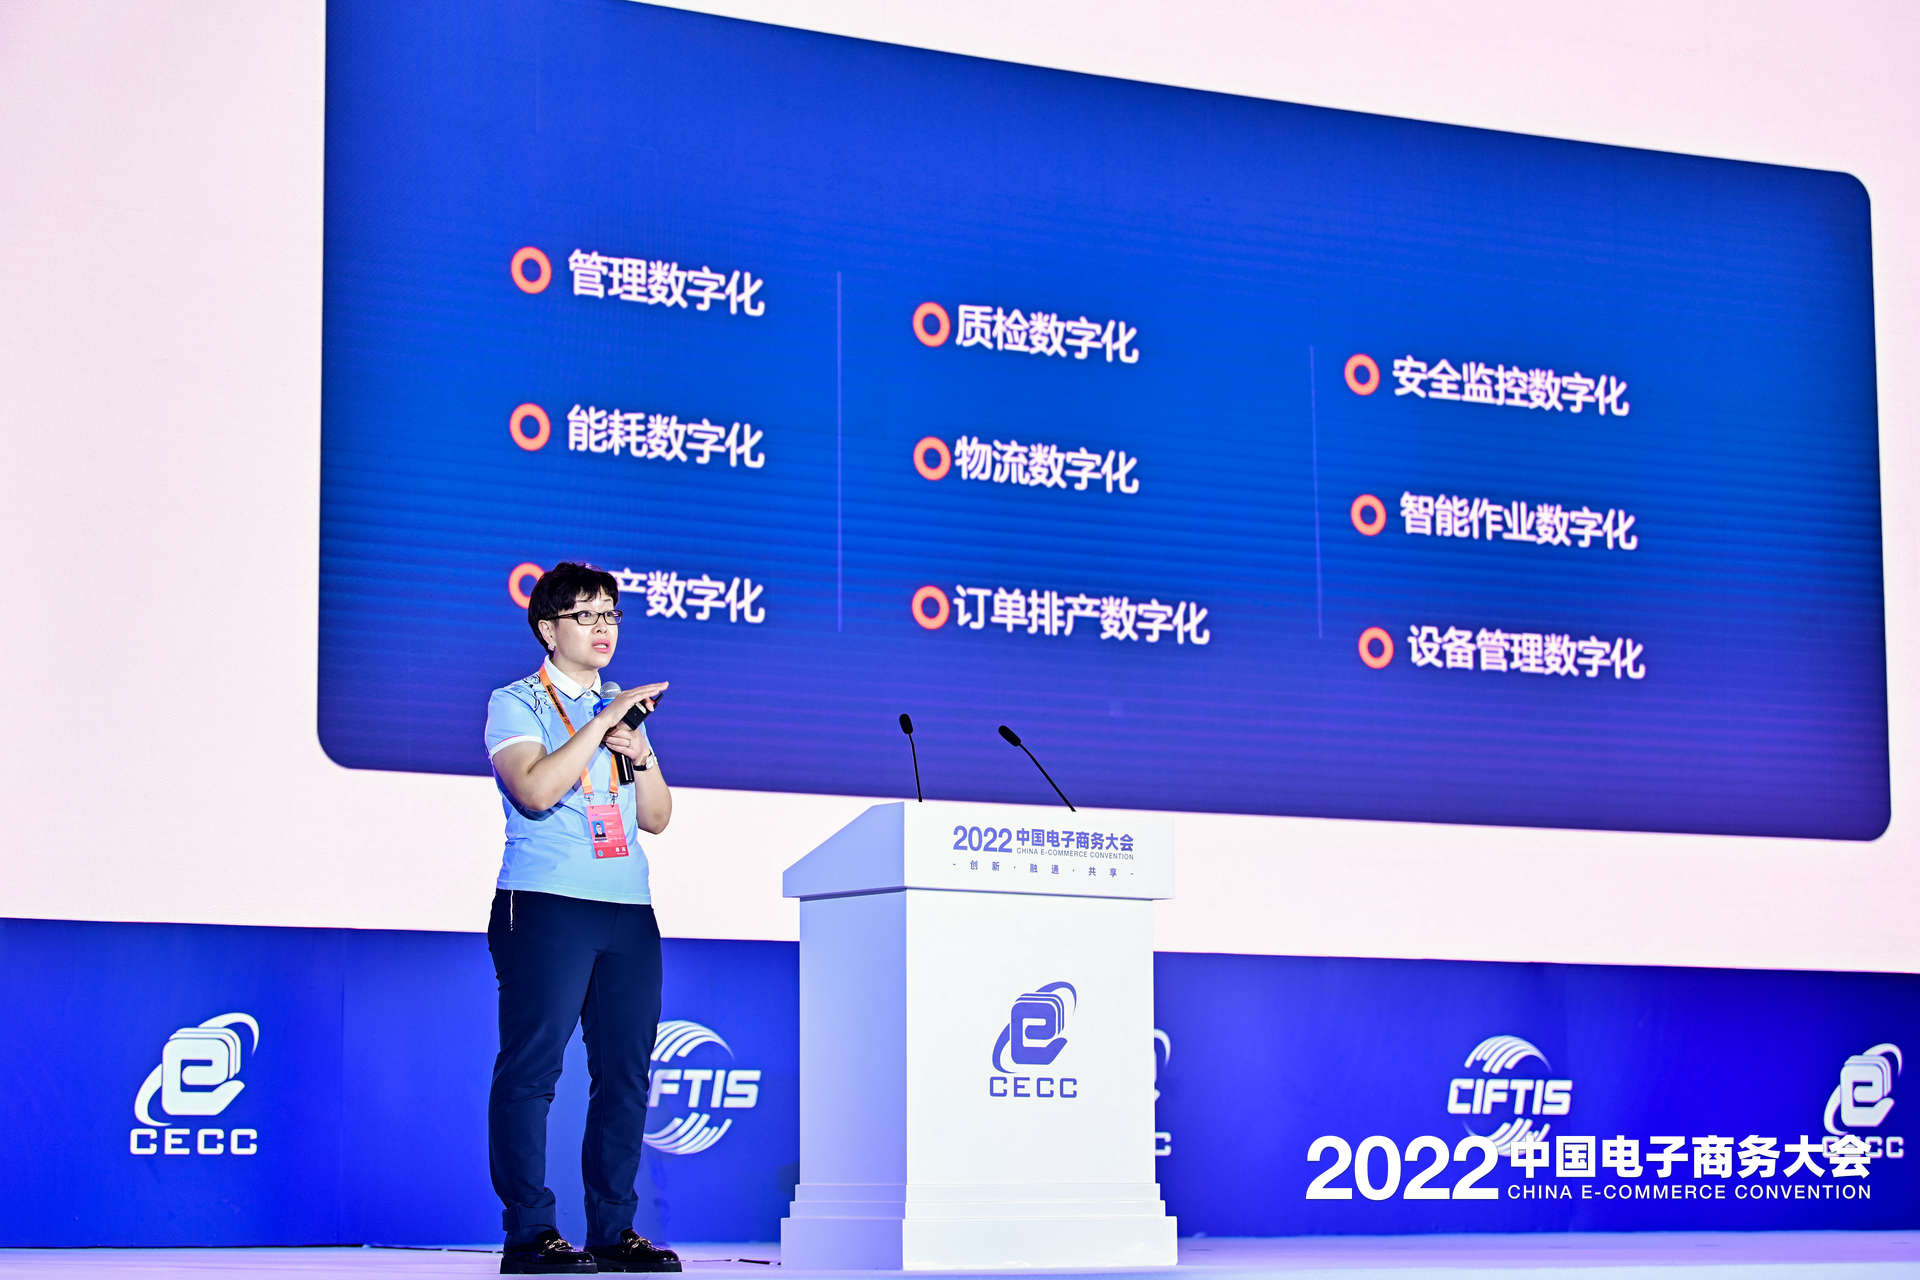 国联股份高级副总裁刘斋应邀出席中国电子商务大会并演讲